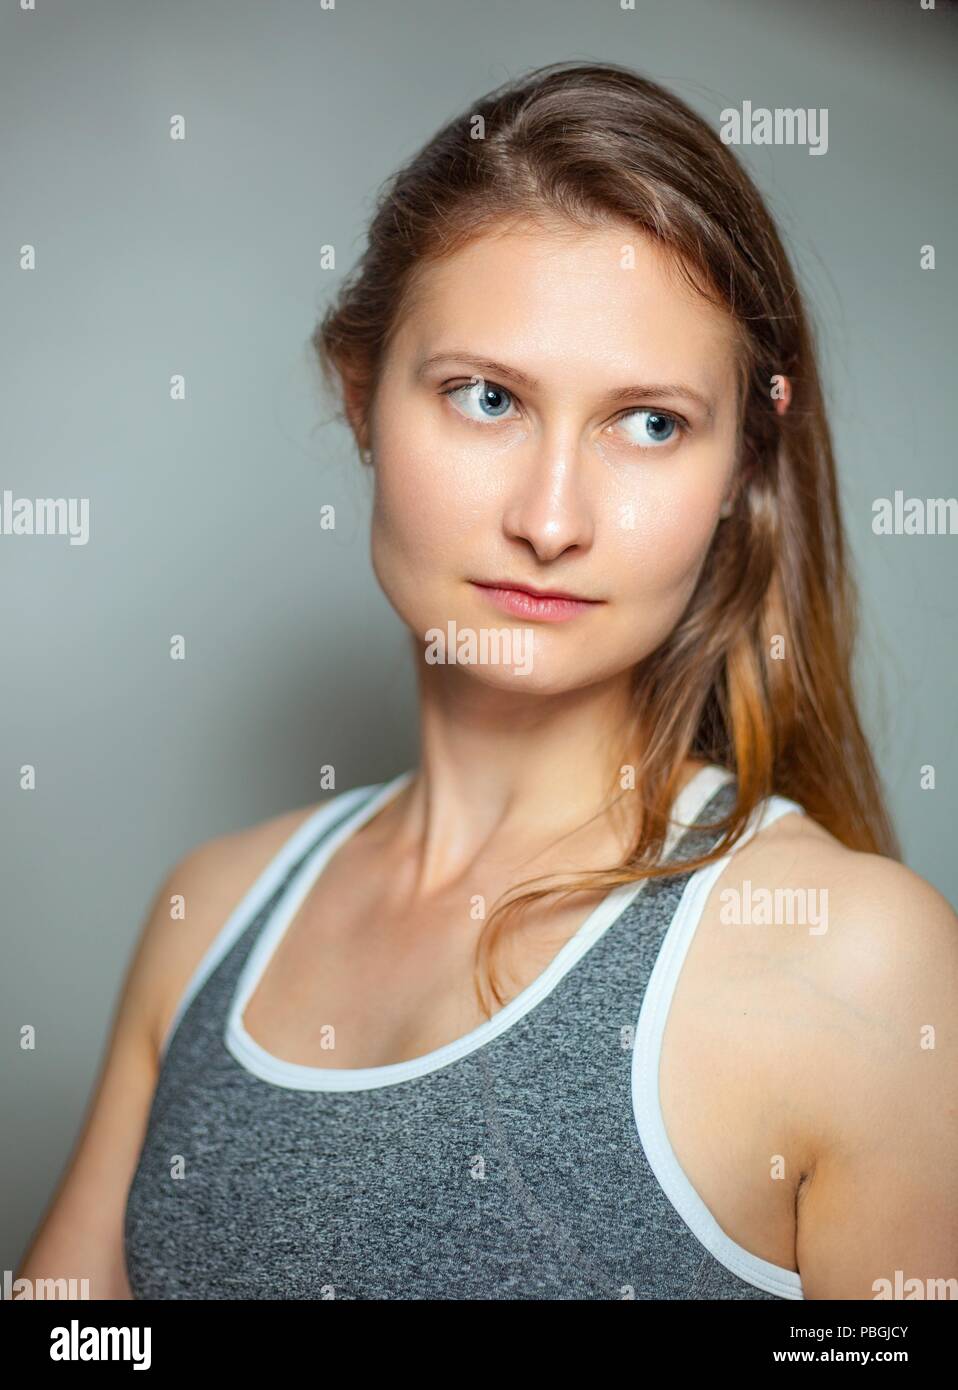 Porträt einer jungen Frau in einem fitness-bh Stockfoto